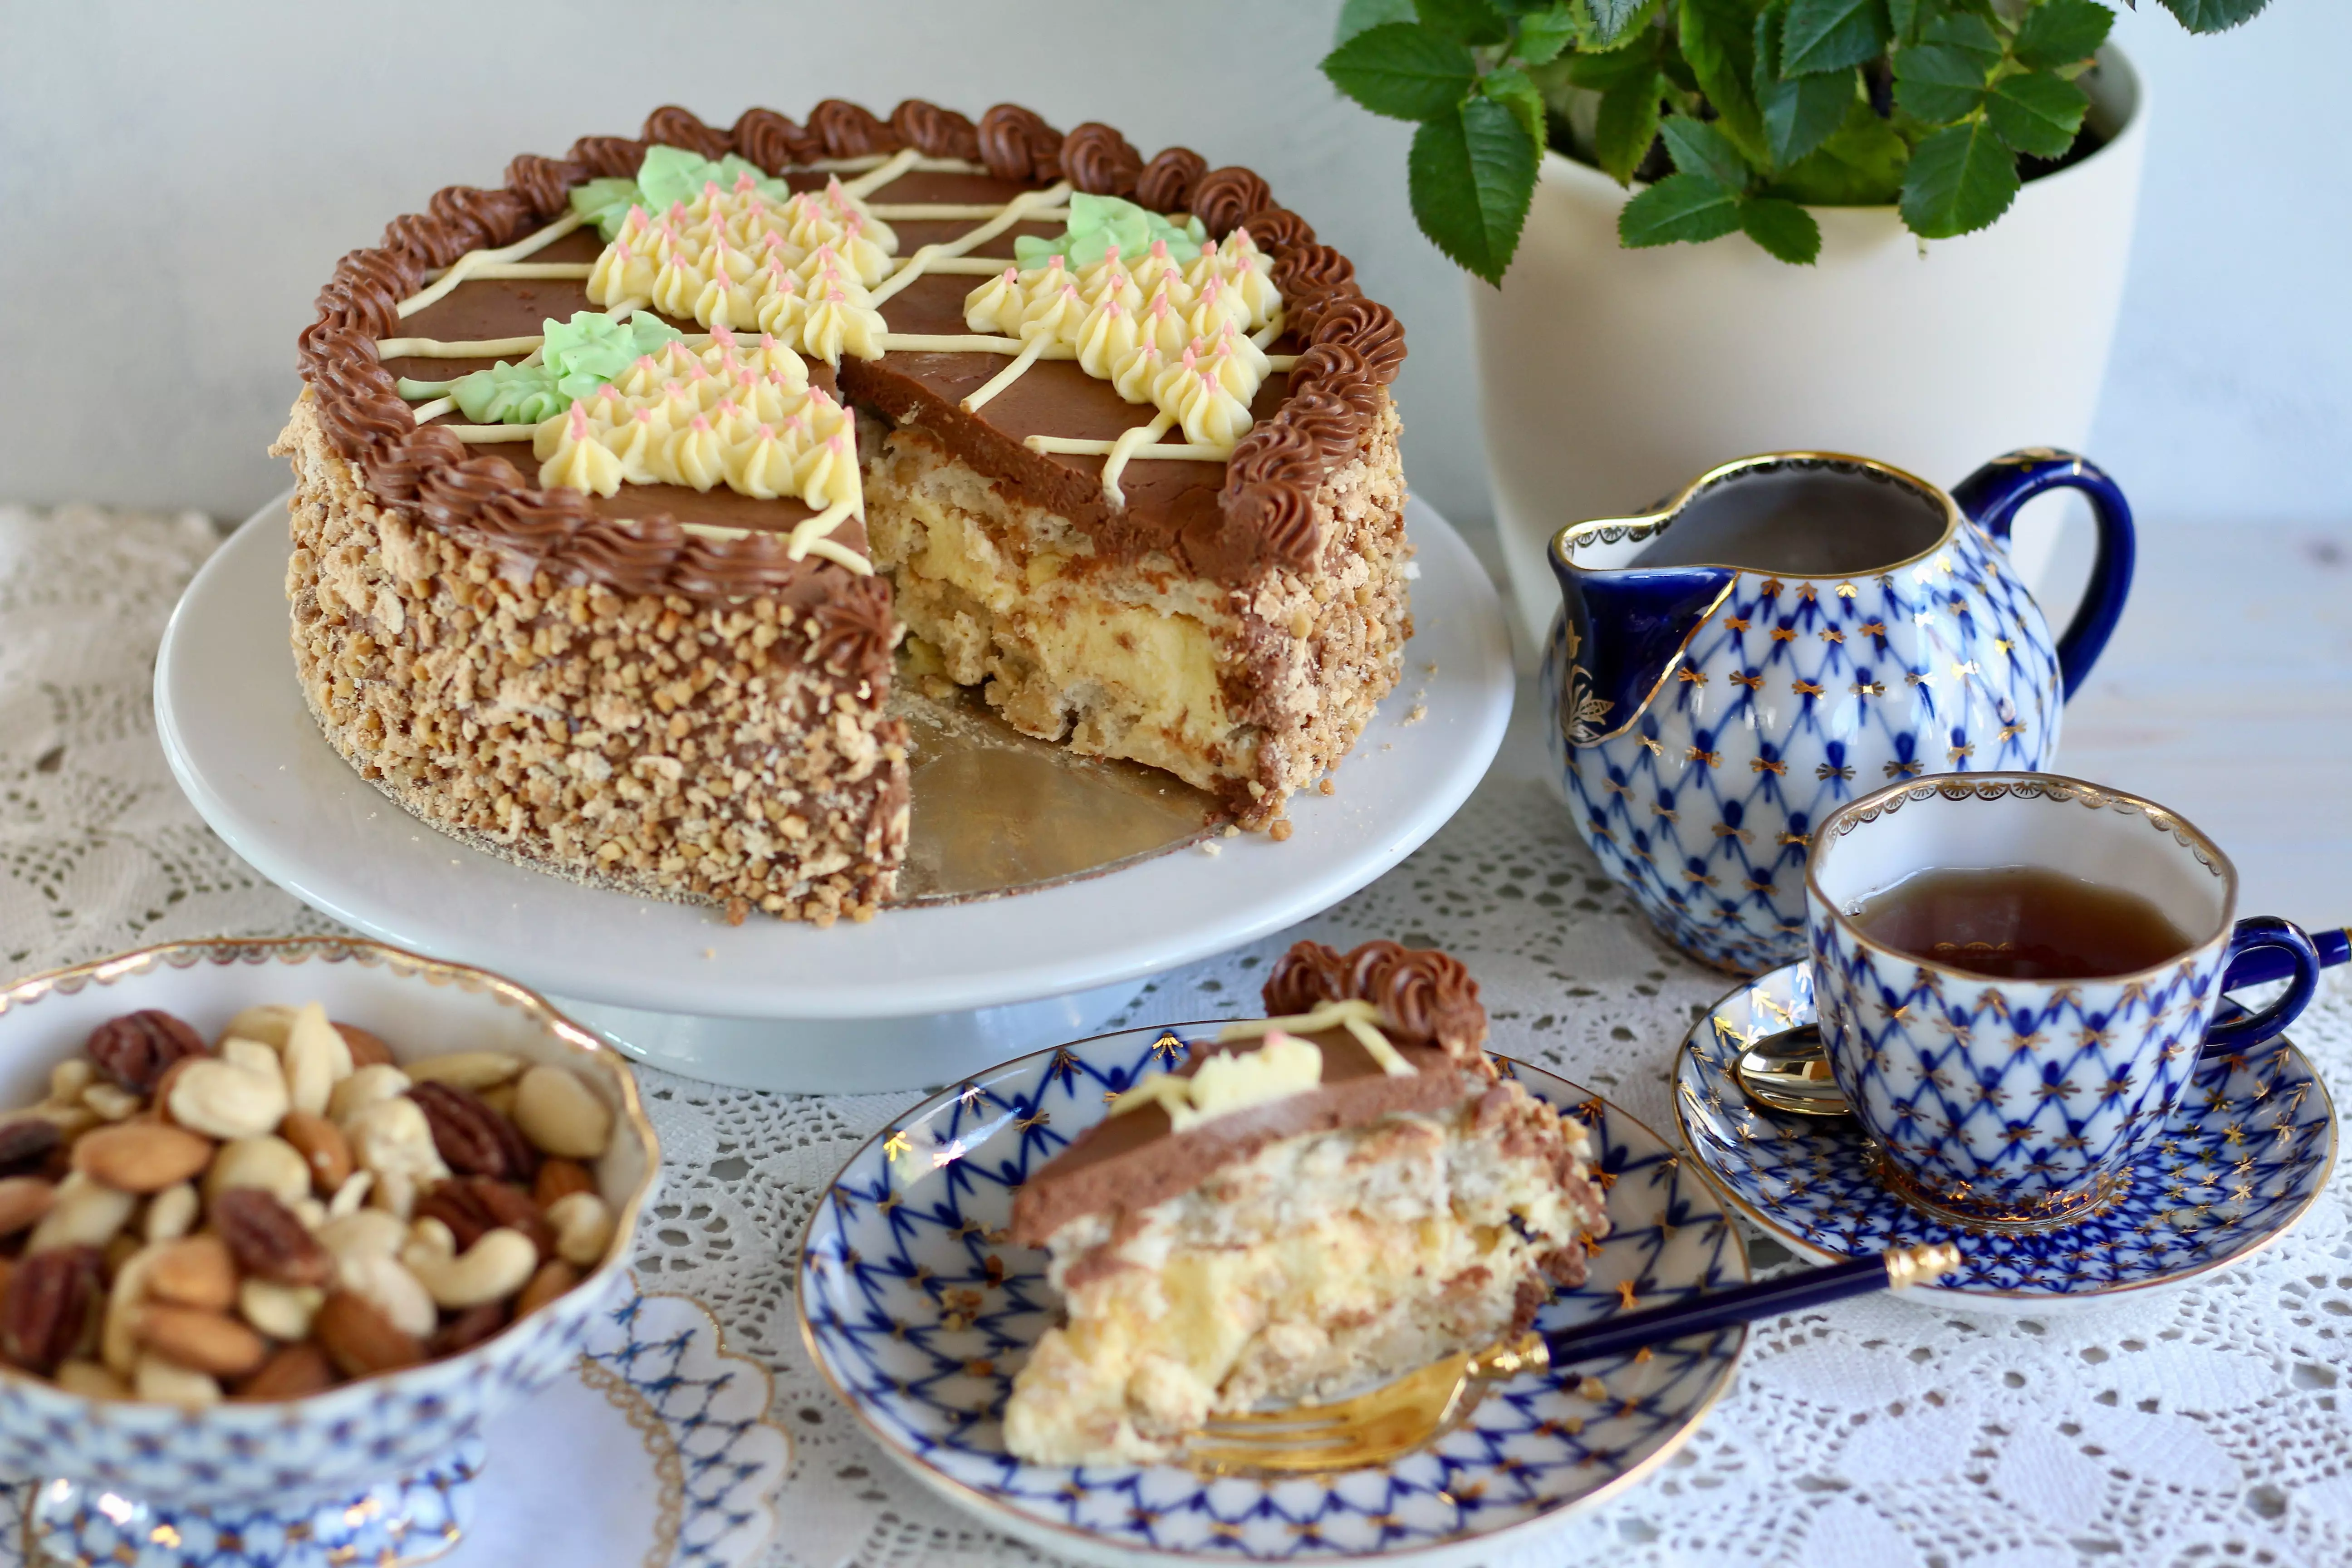 Der ukrainische Torten-Klassiker: Kiewer Torte! Unfassbar lecker, knusprig und cremig zugleich! Rezept und Video von Sugarprincess